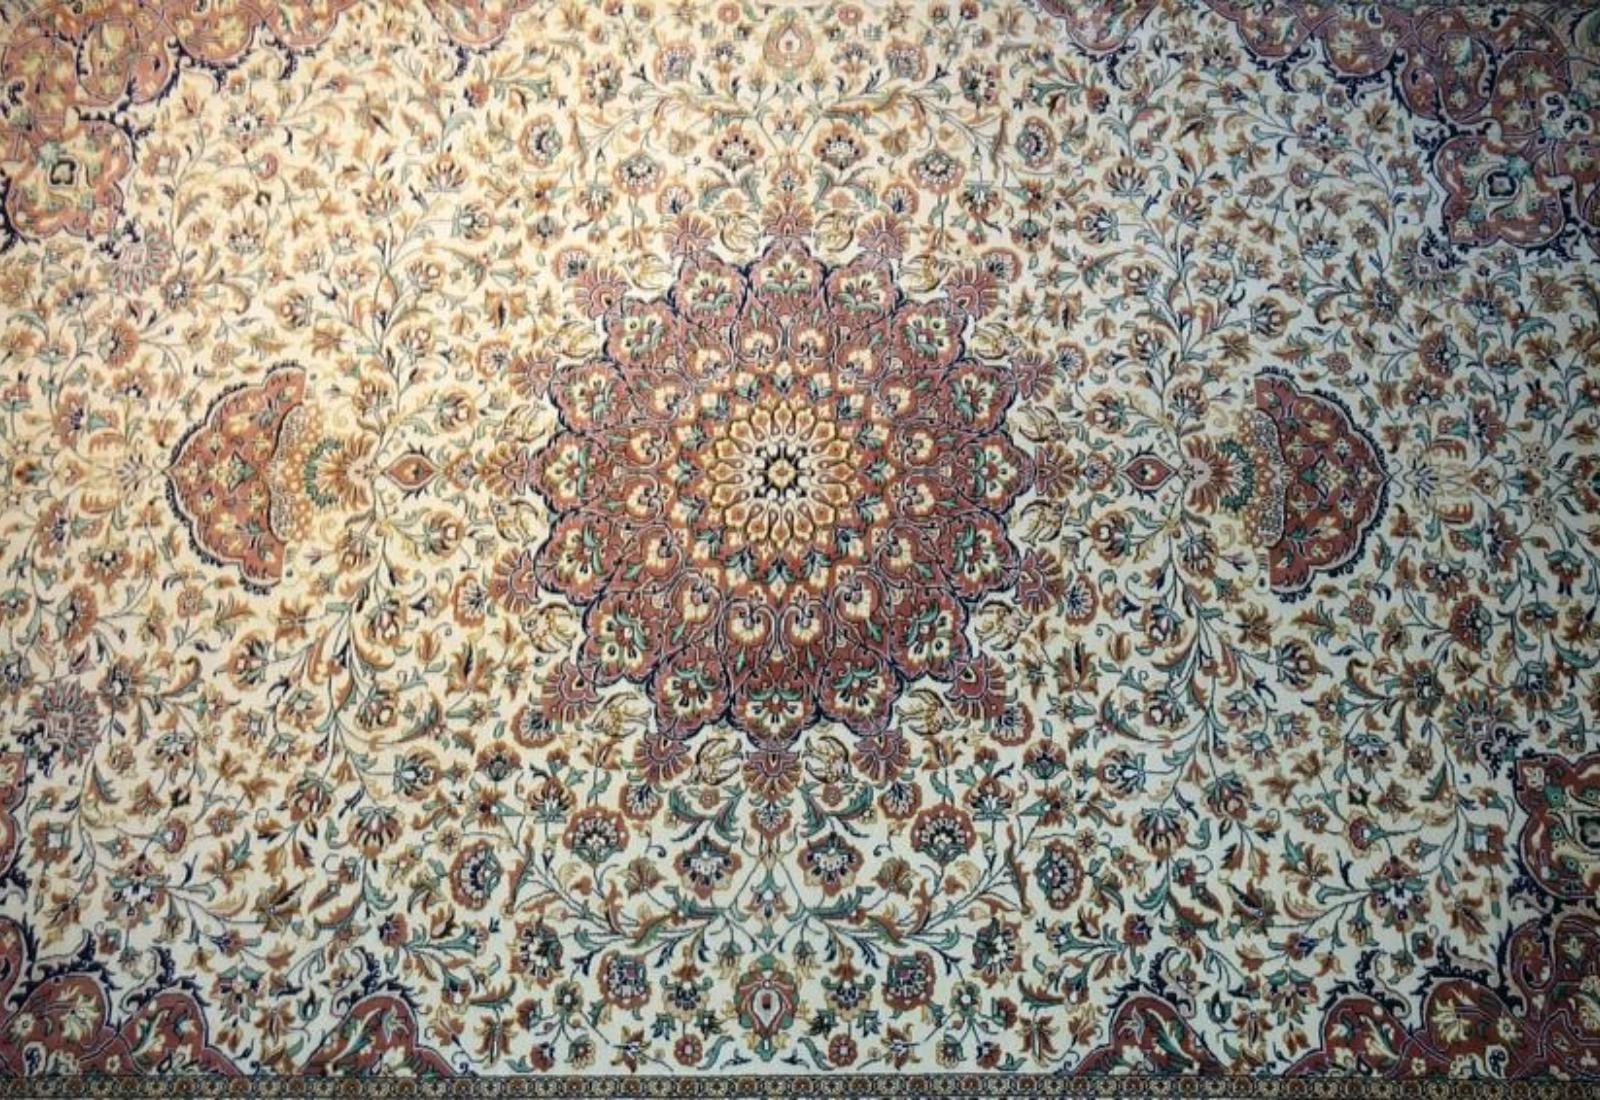 Contemporary Very fine Persian Silk Qum - 7.1' 5.2' For Sale